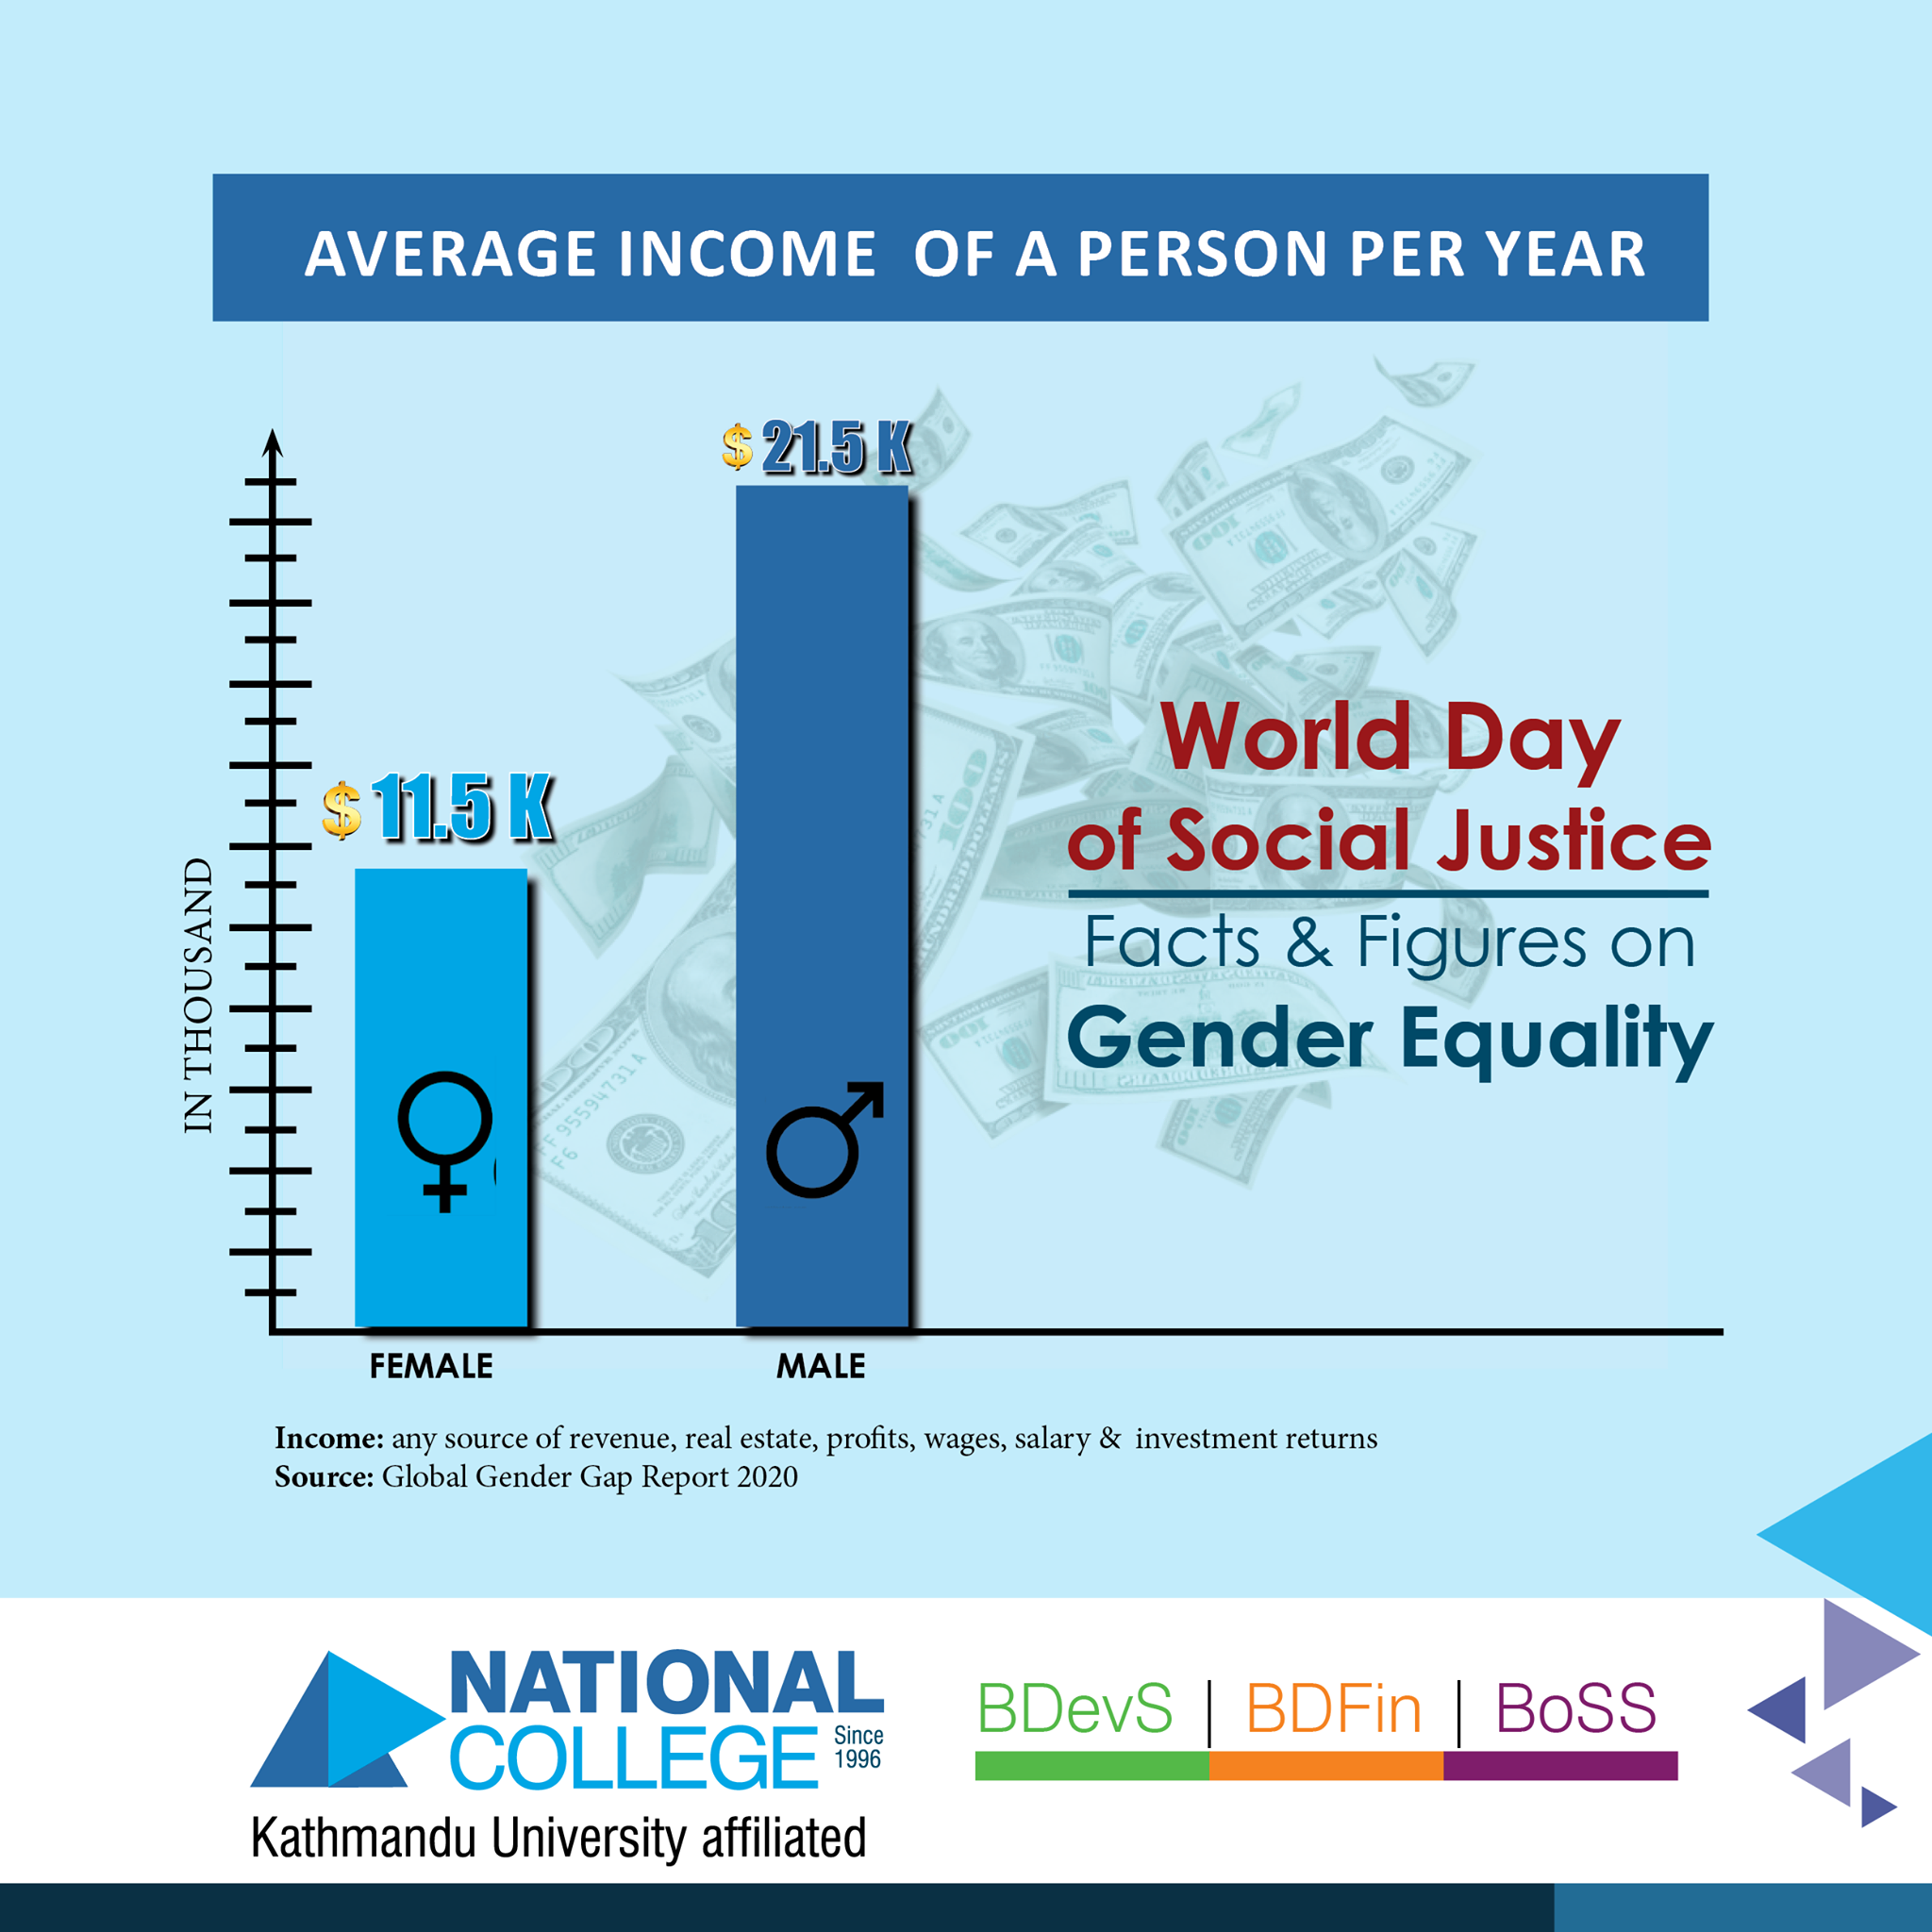 Source: Global Gender Gap Report 2020